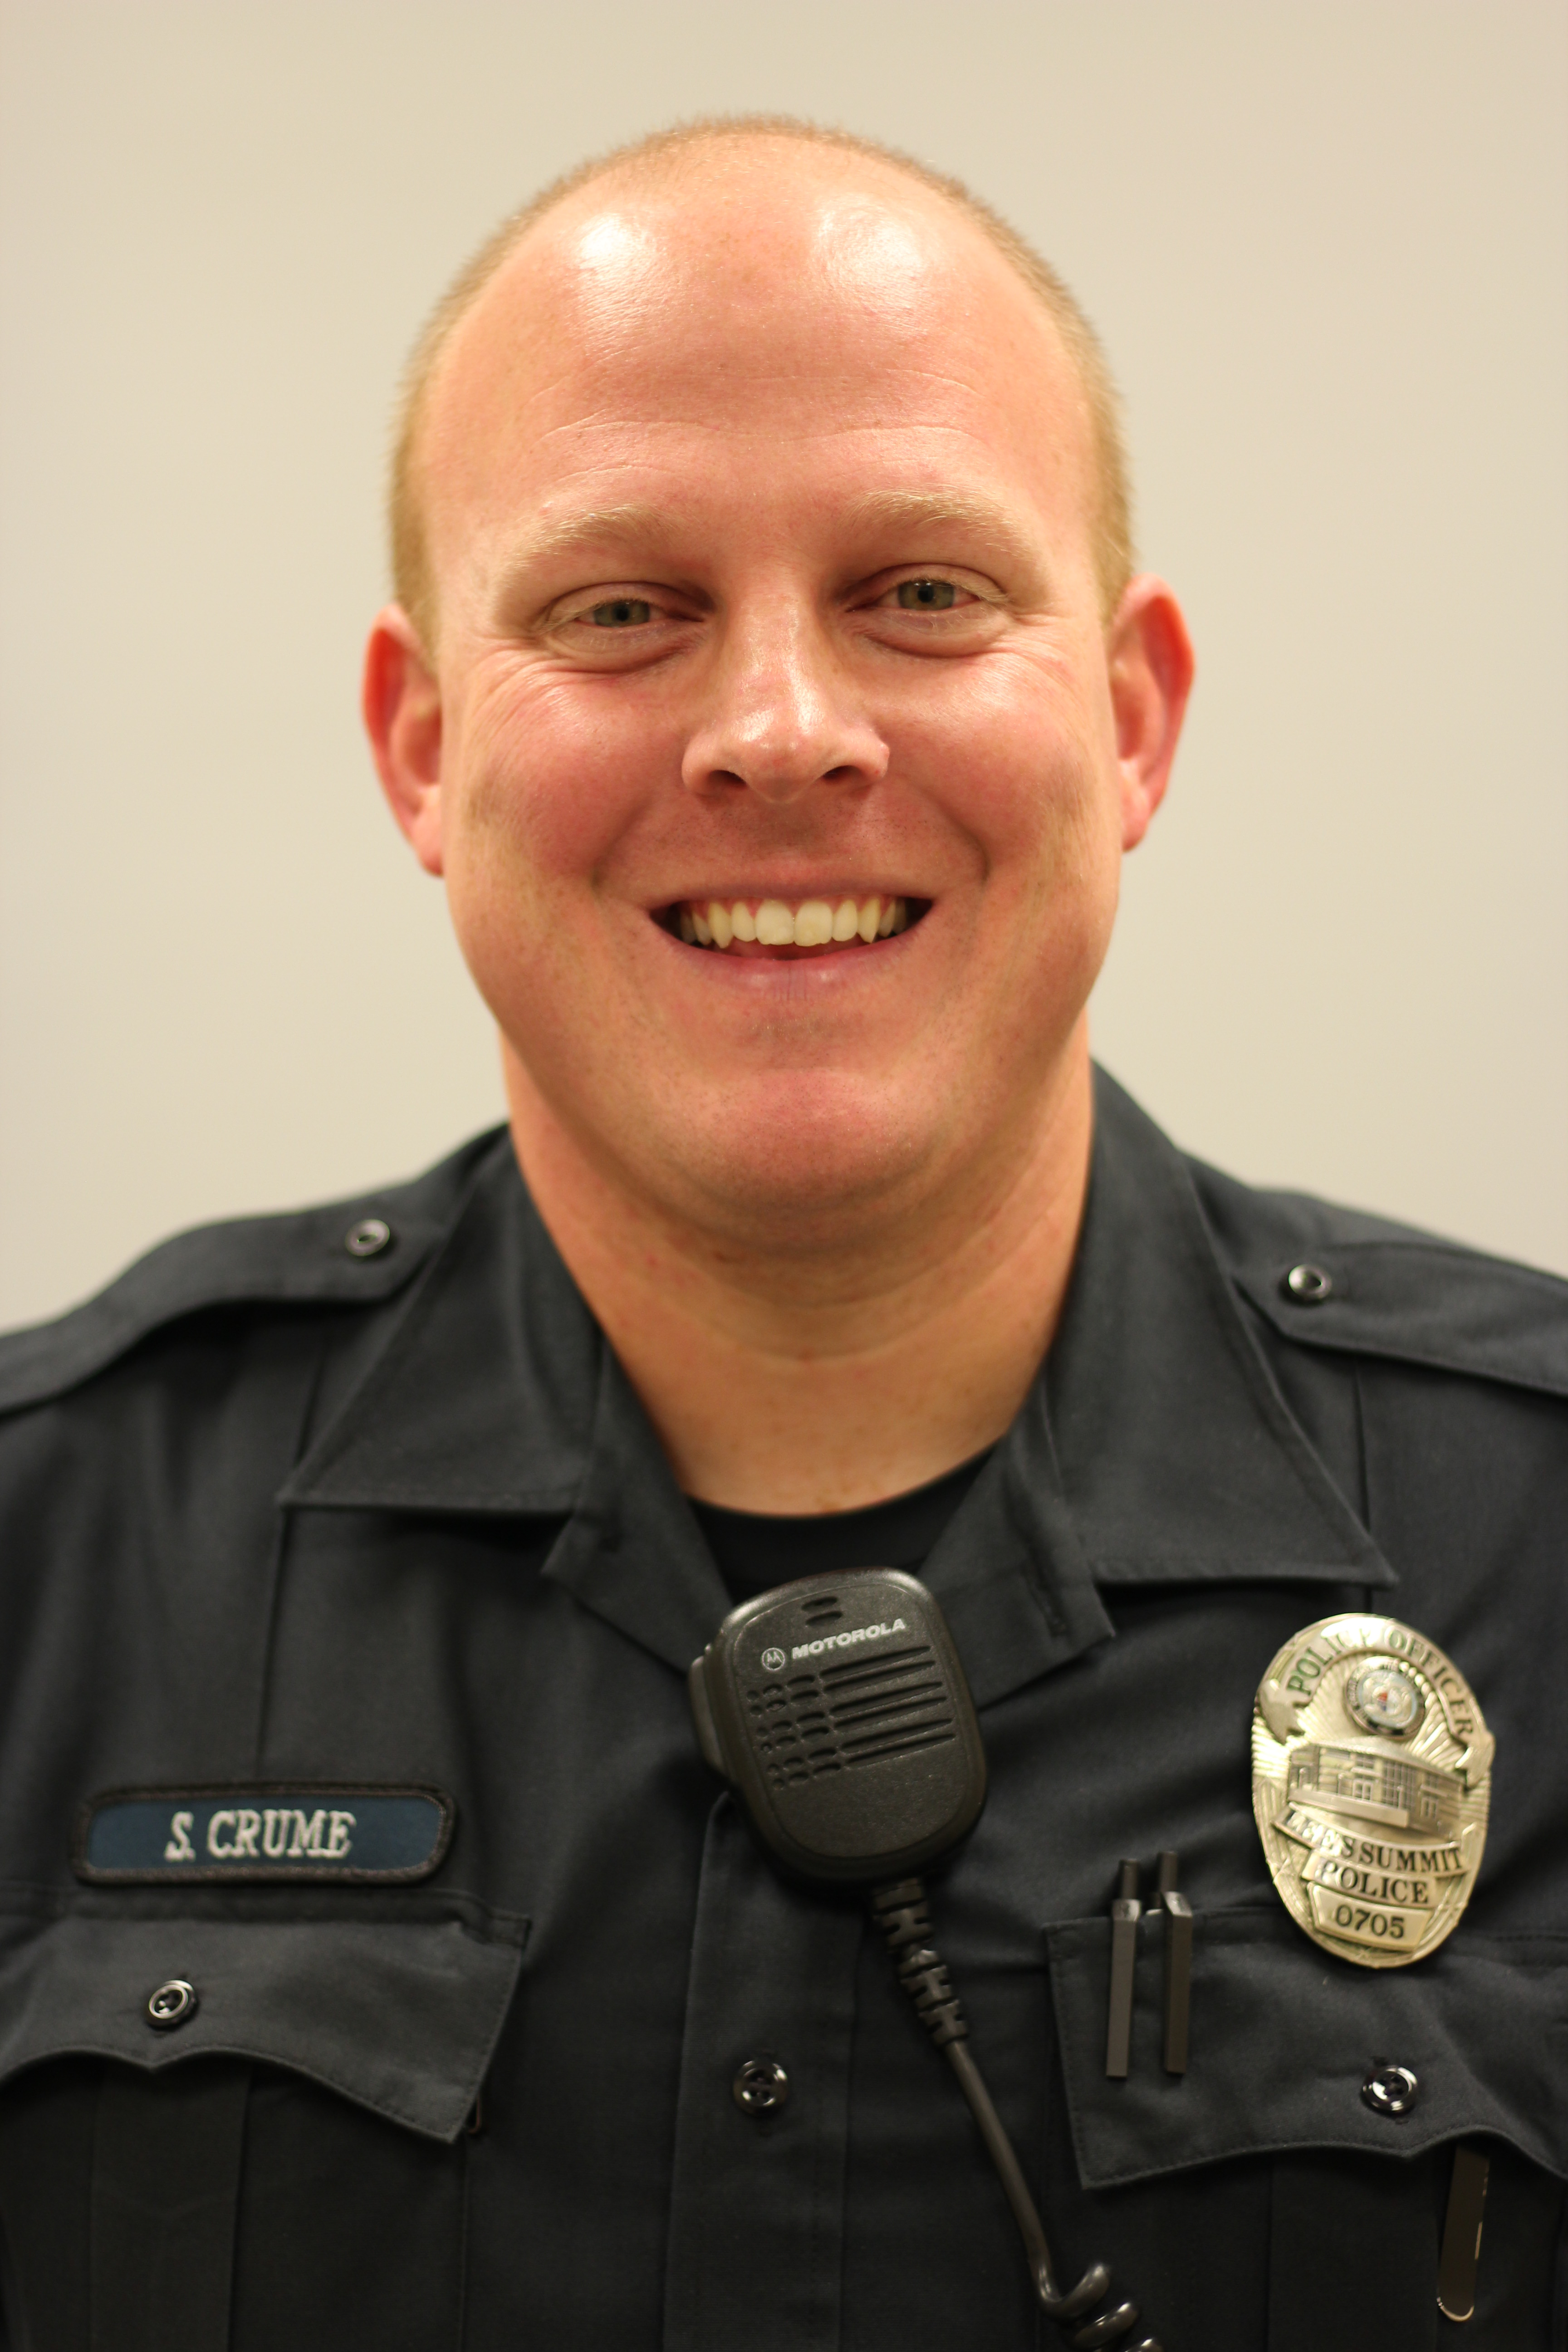 Image of Officer Steve Crume